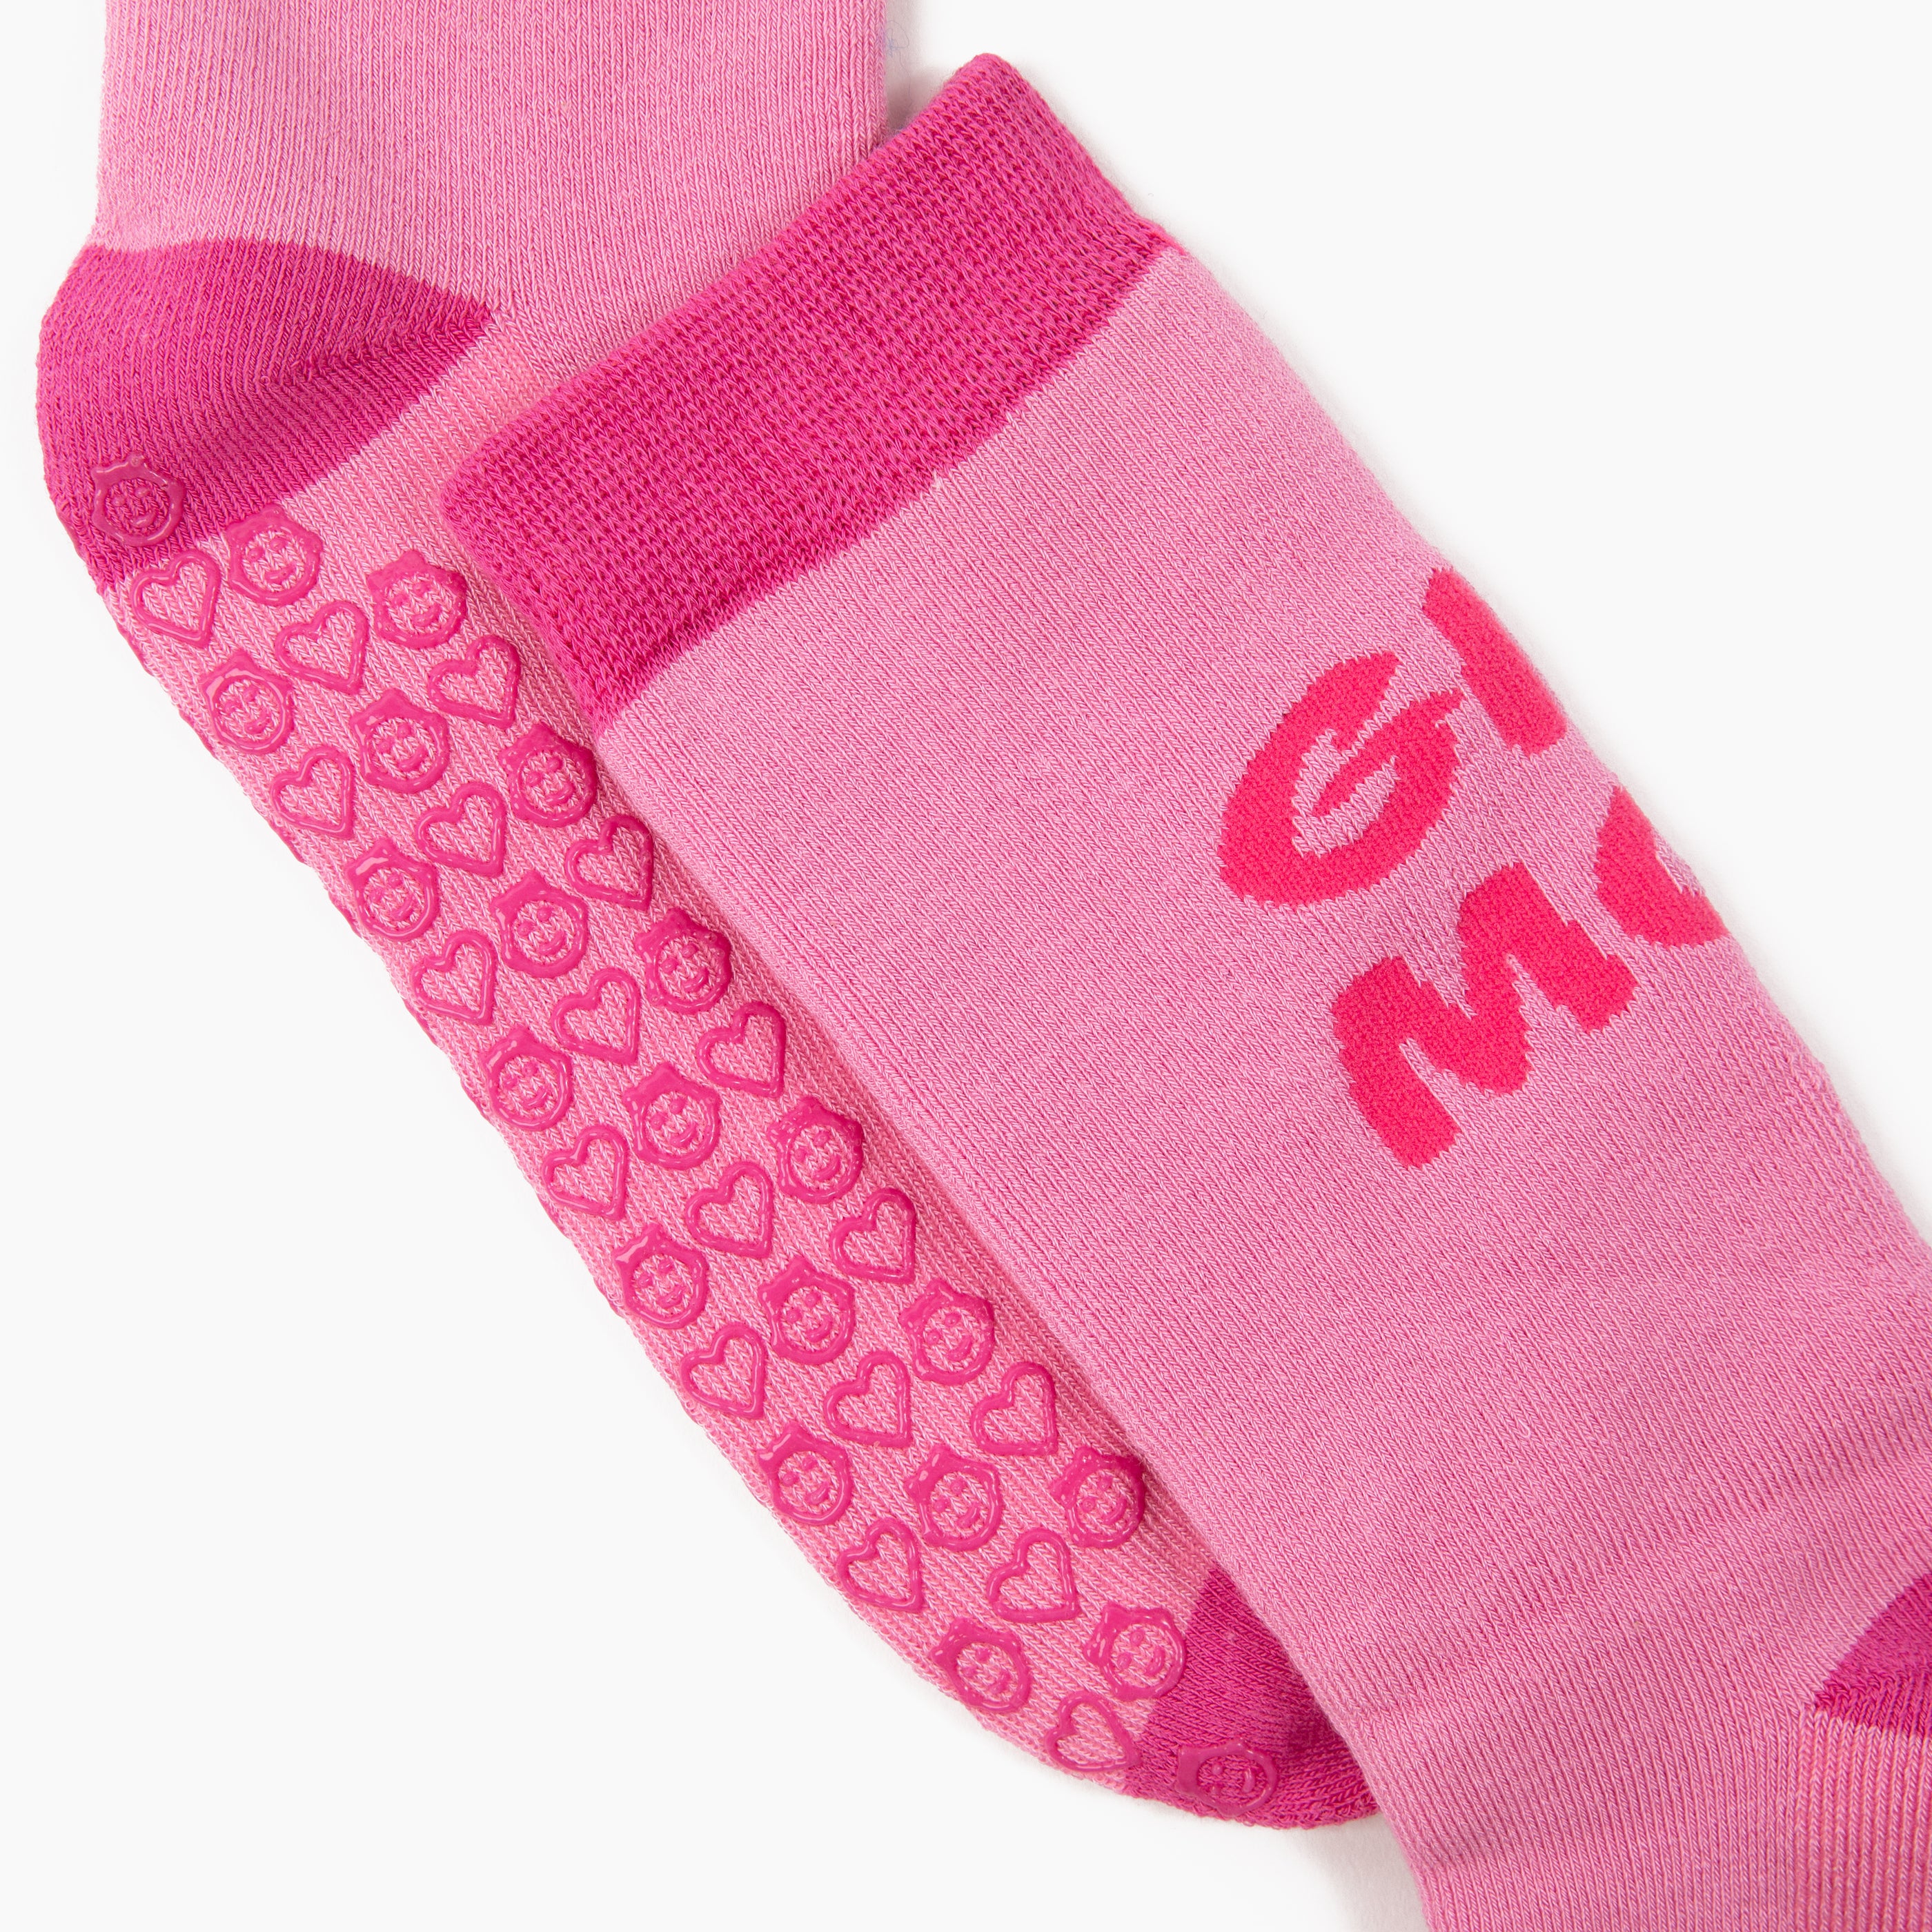 Pink & Red Grippy Socks